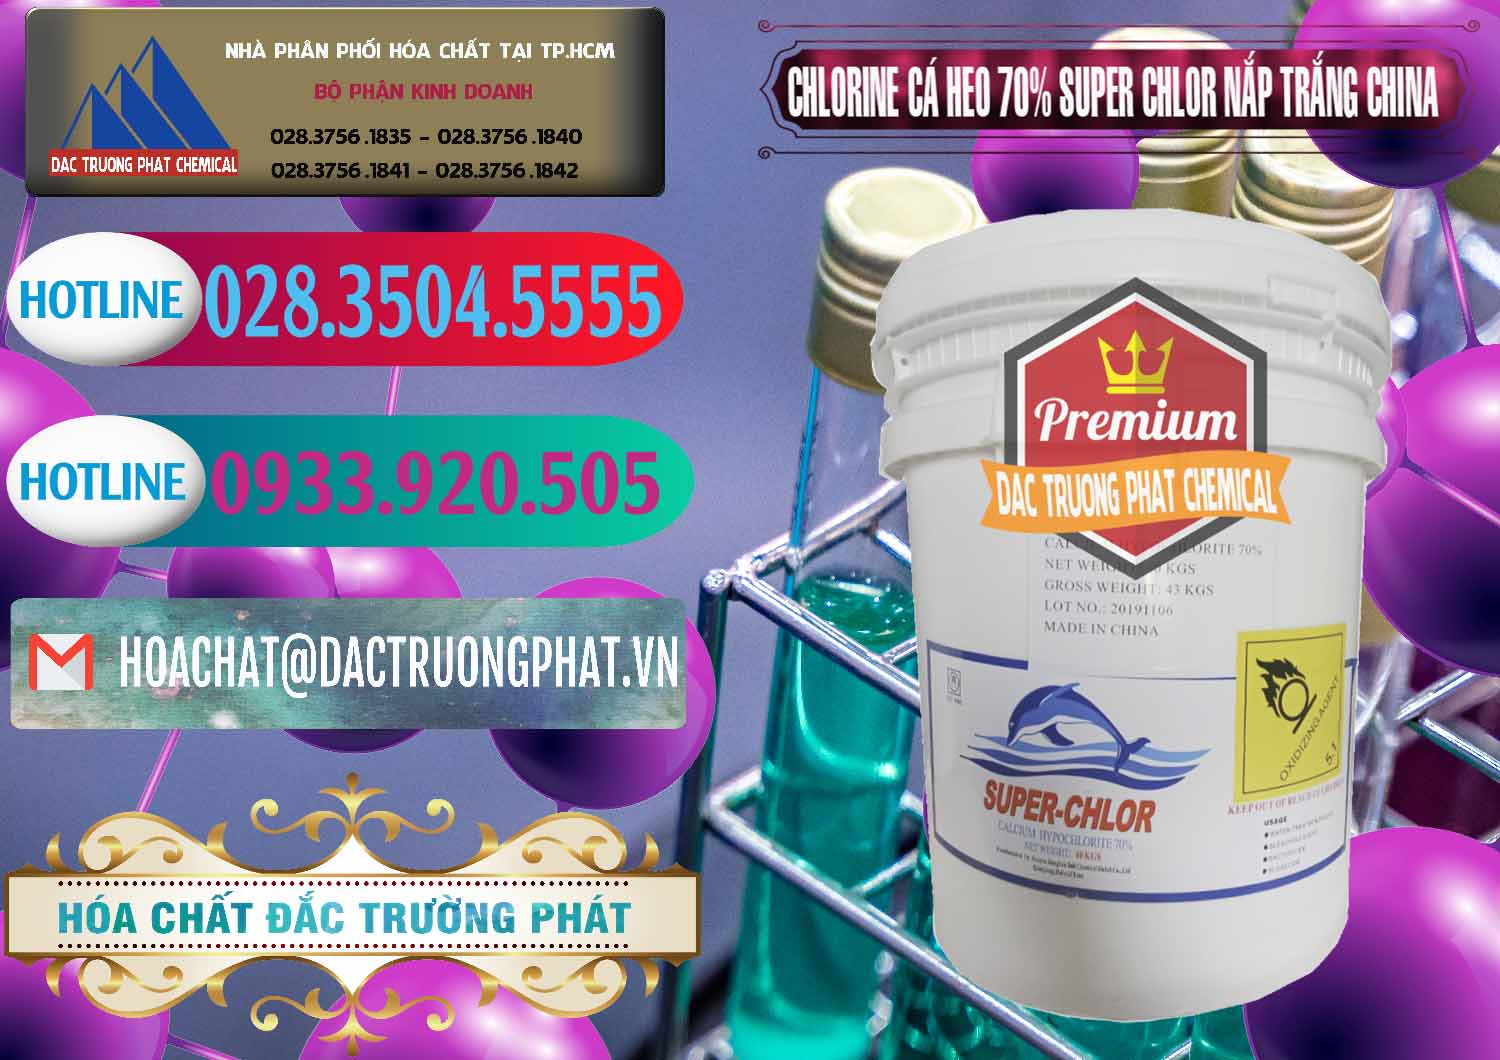 Nơi bán ( cung ứng ) Clorin - Chlorine Cá Heo 70% Super Chlor Nắp Trắng Trung Quốc China - 0240 - Cung cấp và nhập khẩu hóa chất tại TP.HCM - truongphat.vn